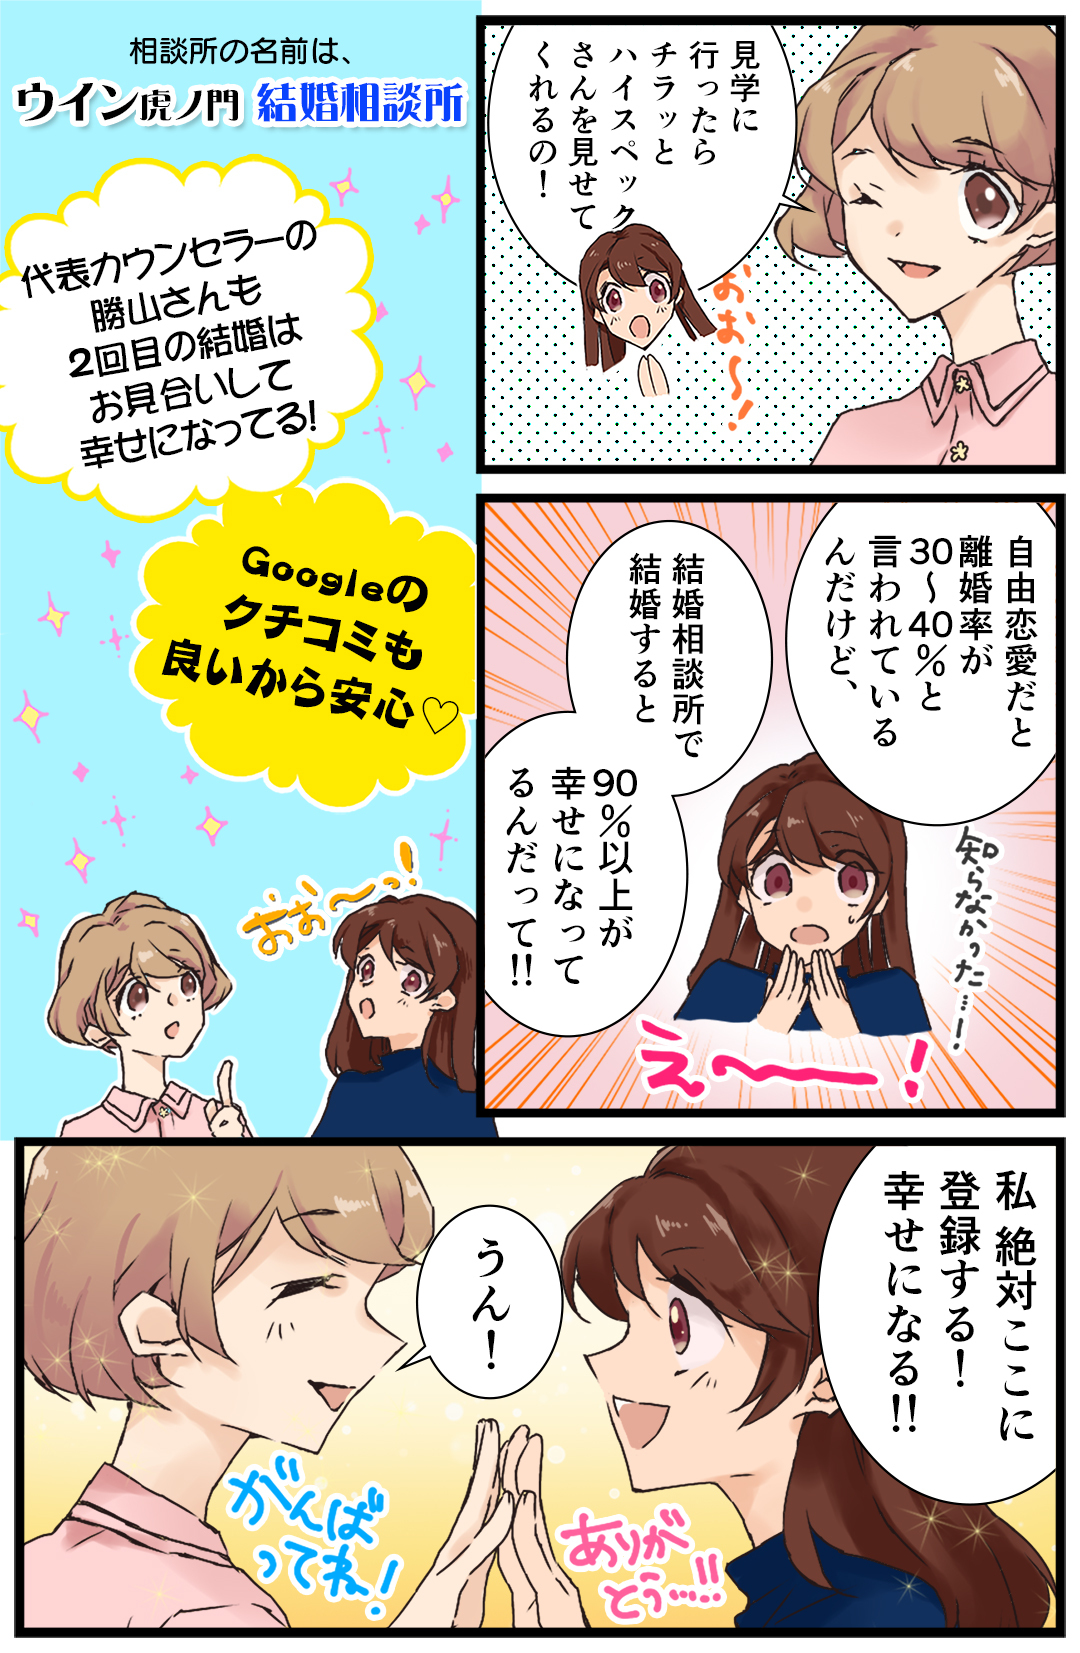 結婚相談所漫画3 (1)